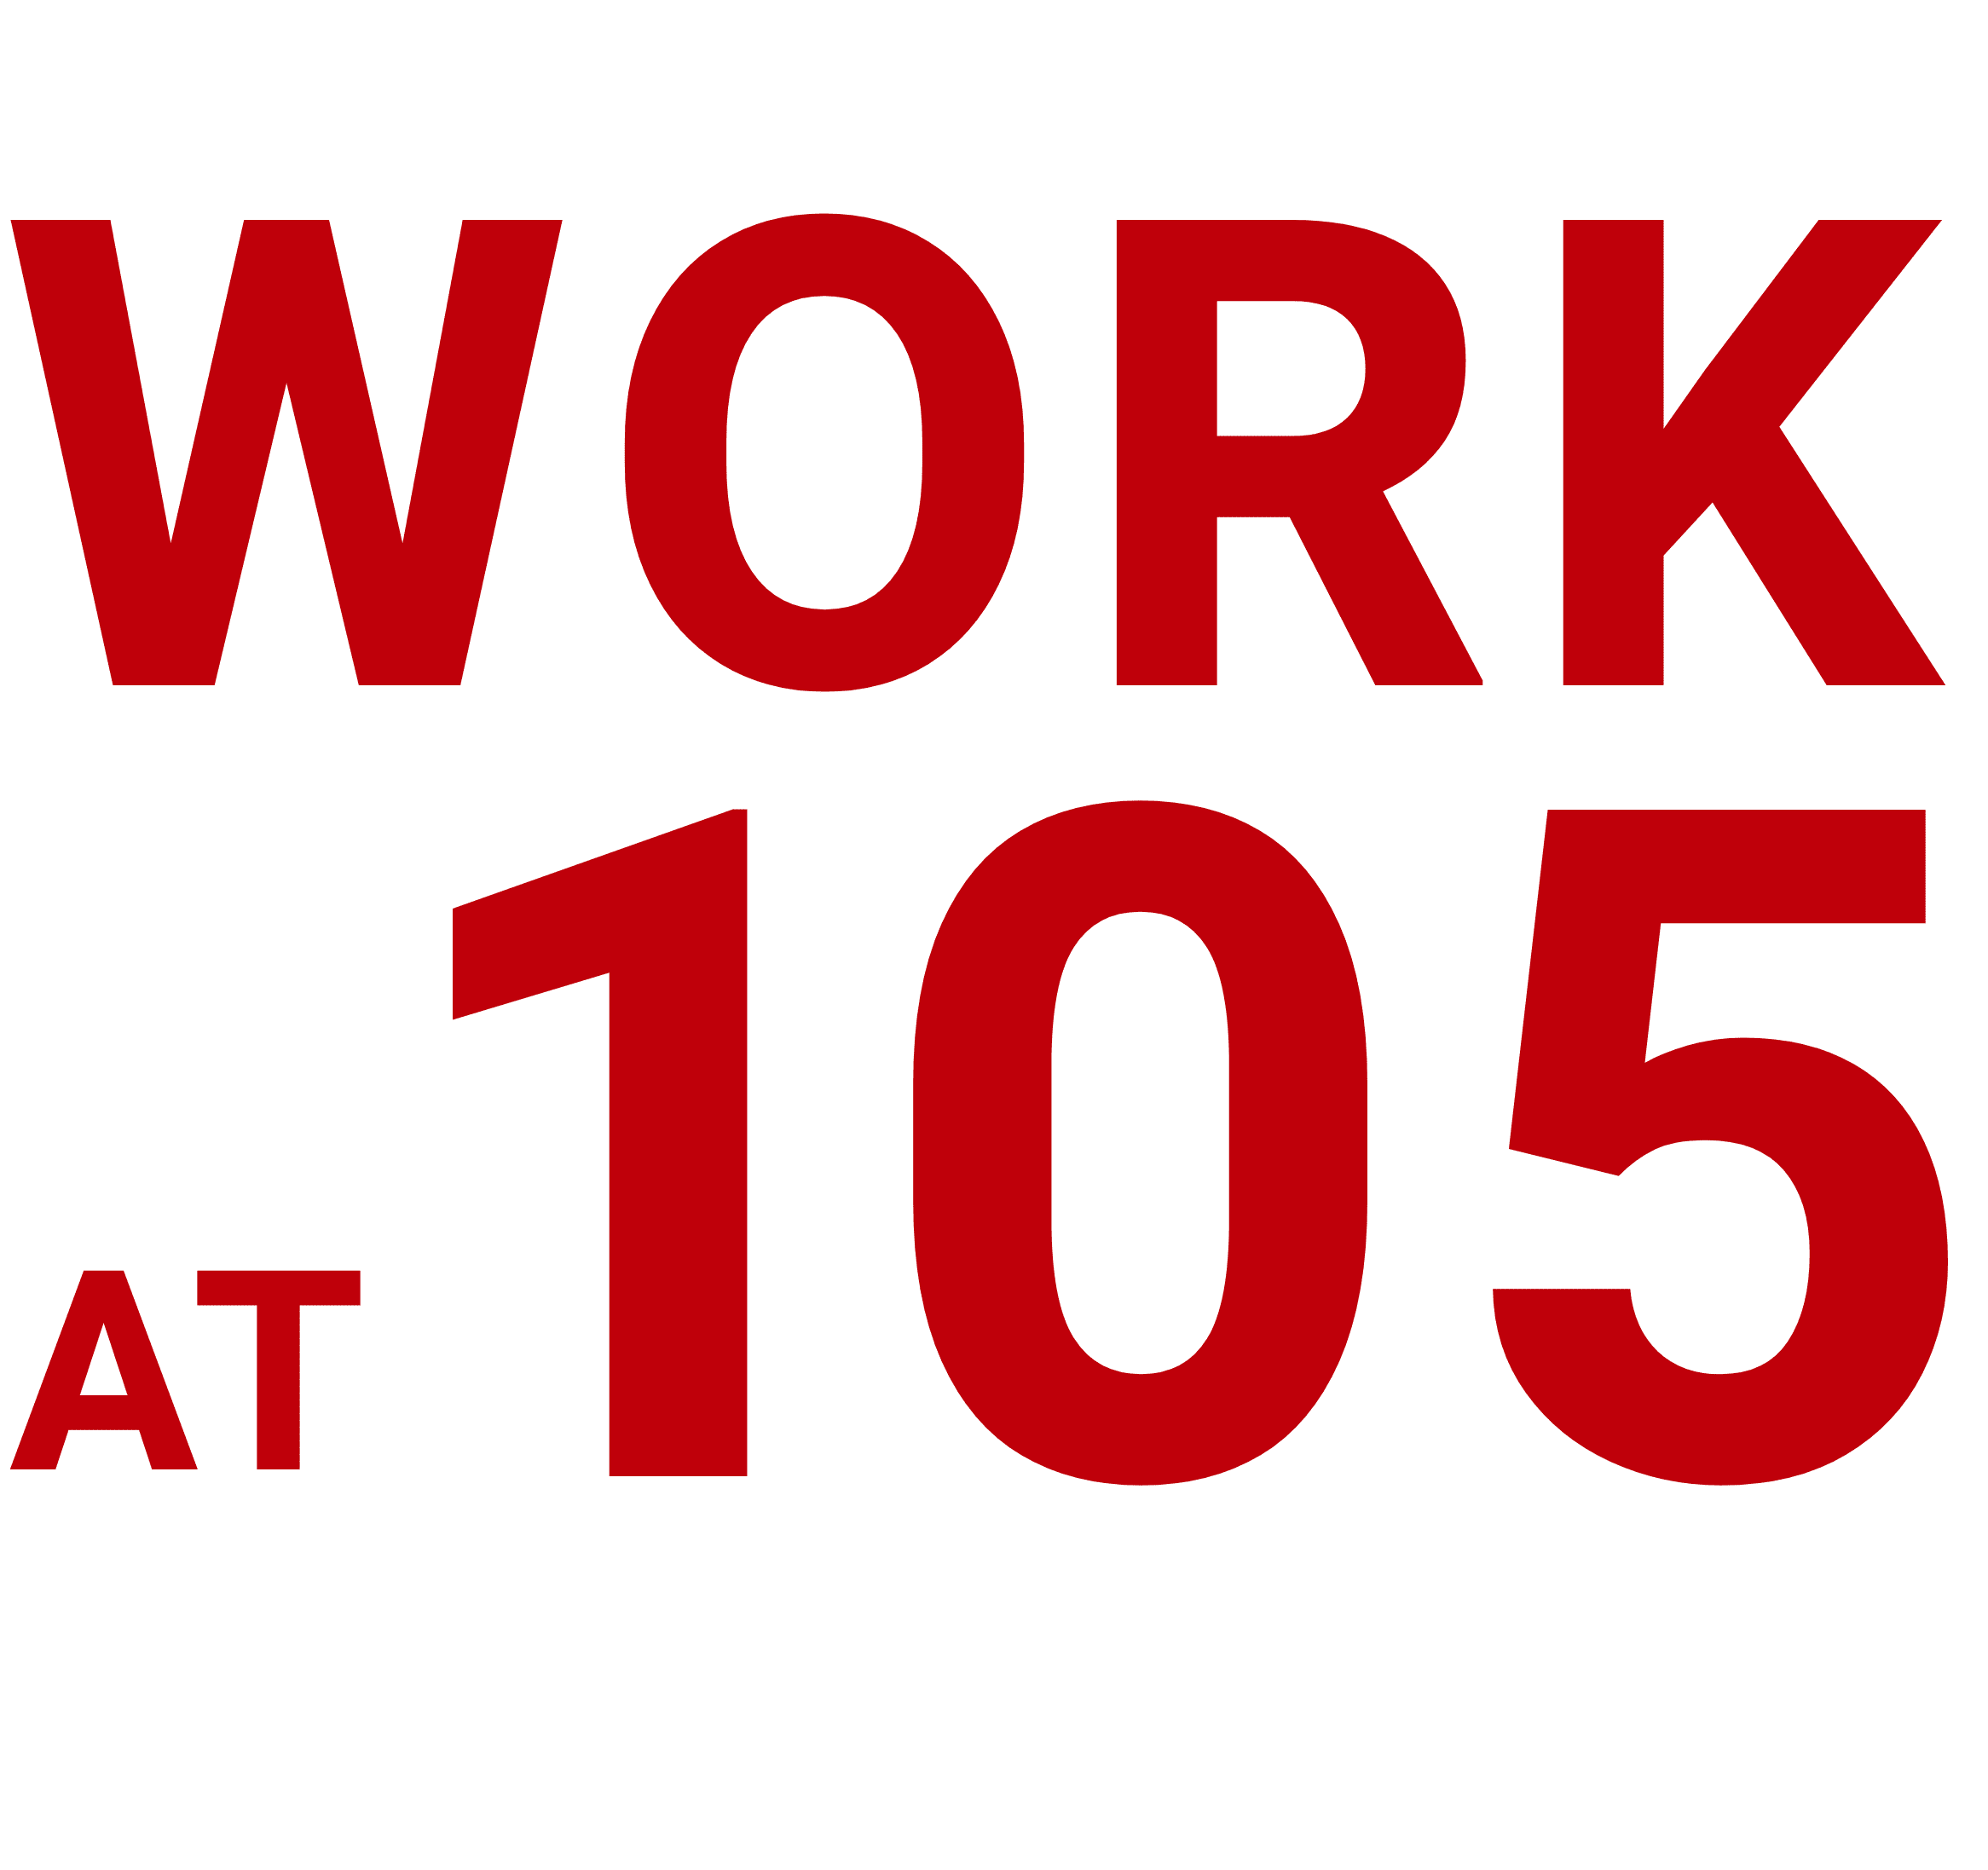 WORK AT 105